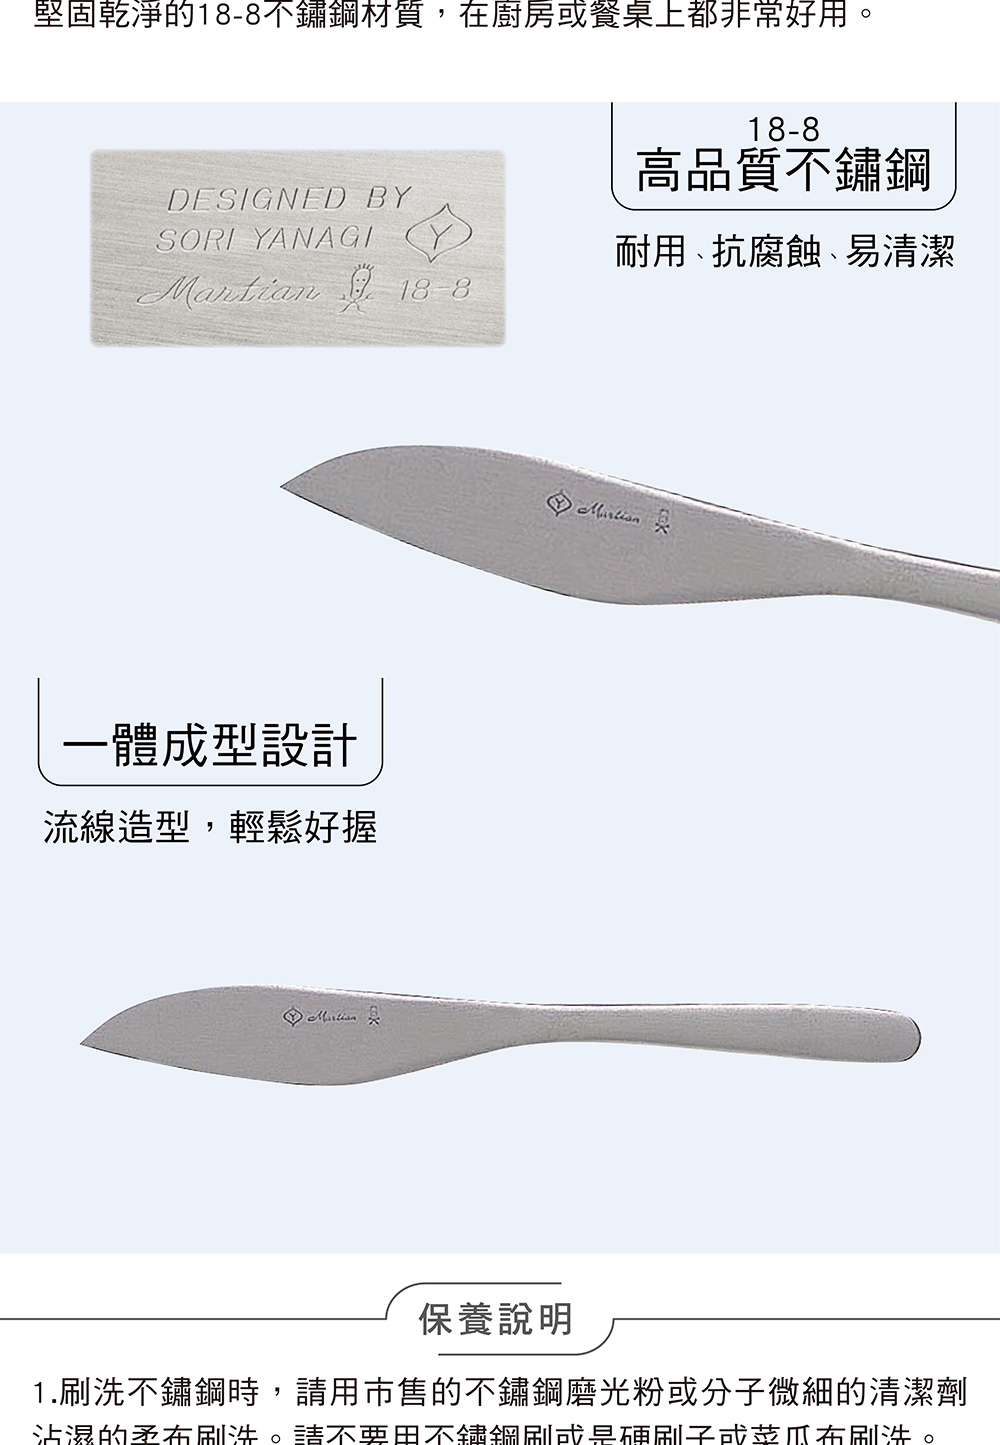 柳宗理 日本製水果刀/二入(18-8高品質不鏽鋼打造的質感餐